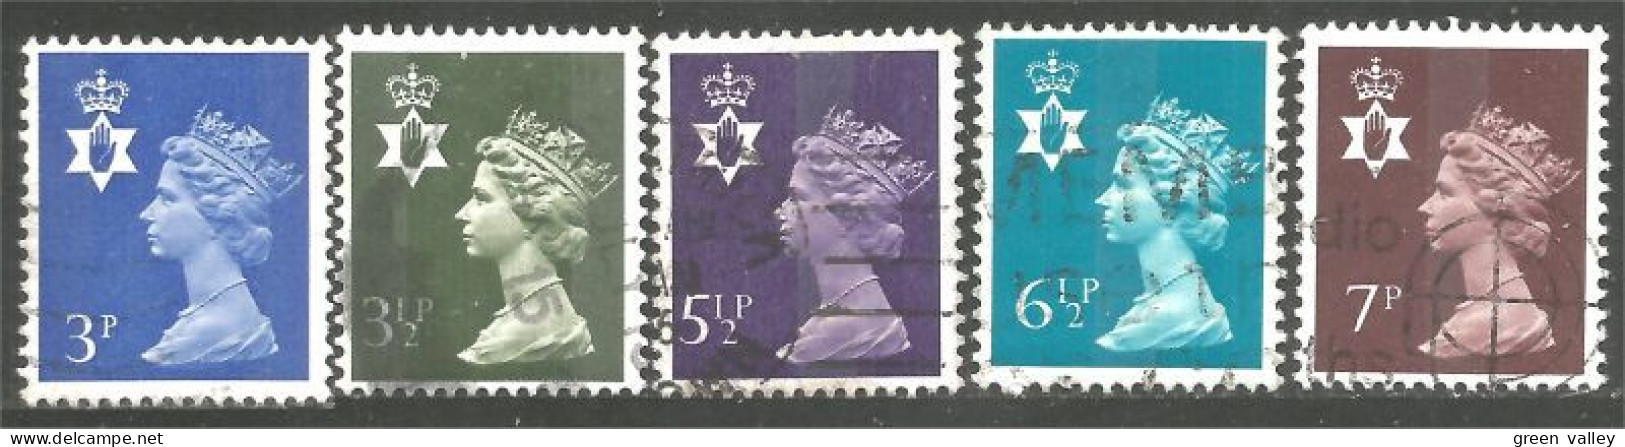 414 G-B Regionals Northern Ireland 5 Stamps Queen Elizabeth (REG-29) - Irlanda Del Nord